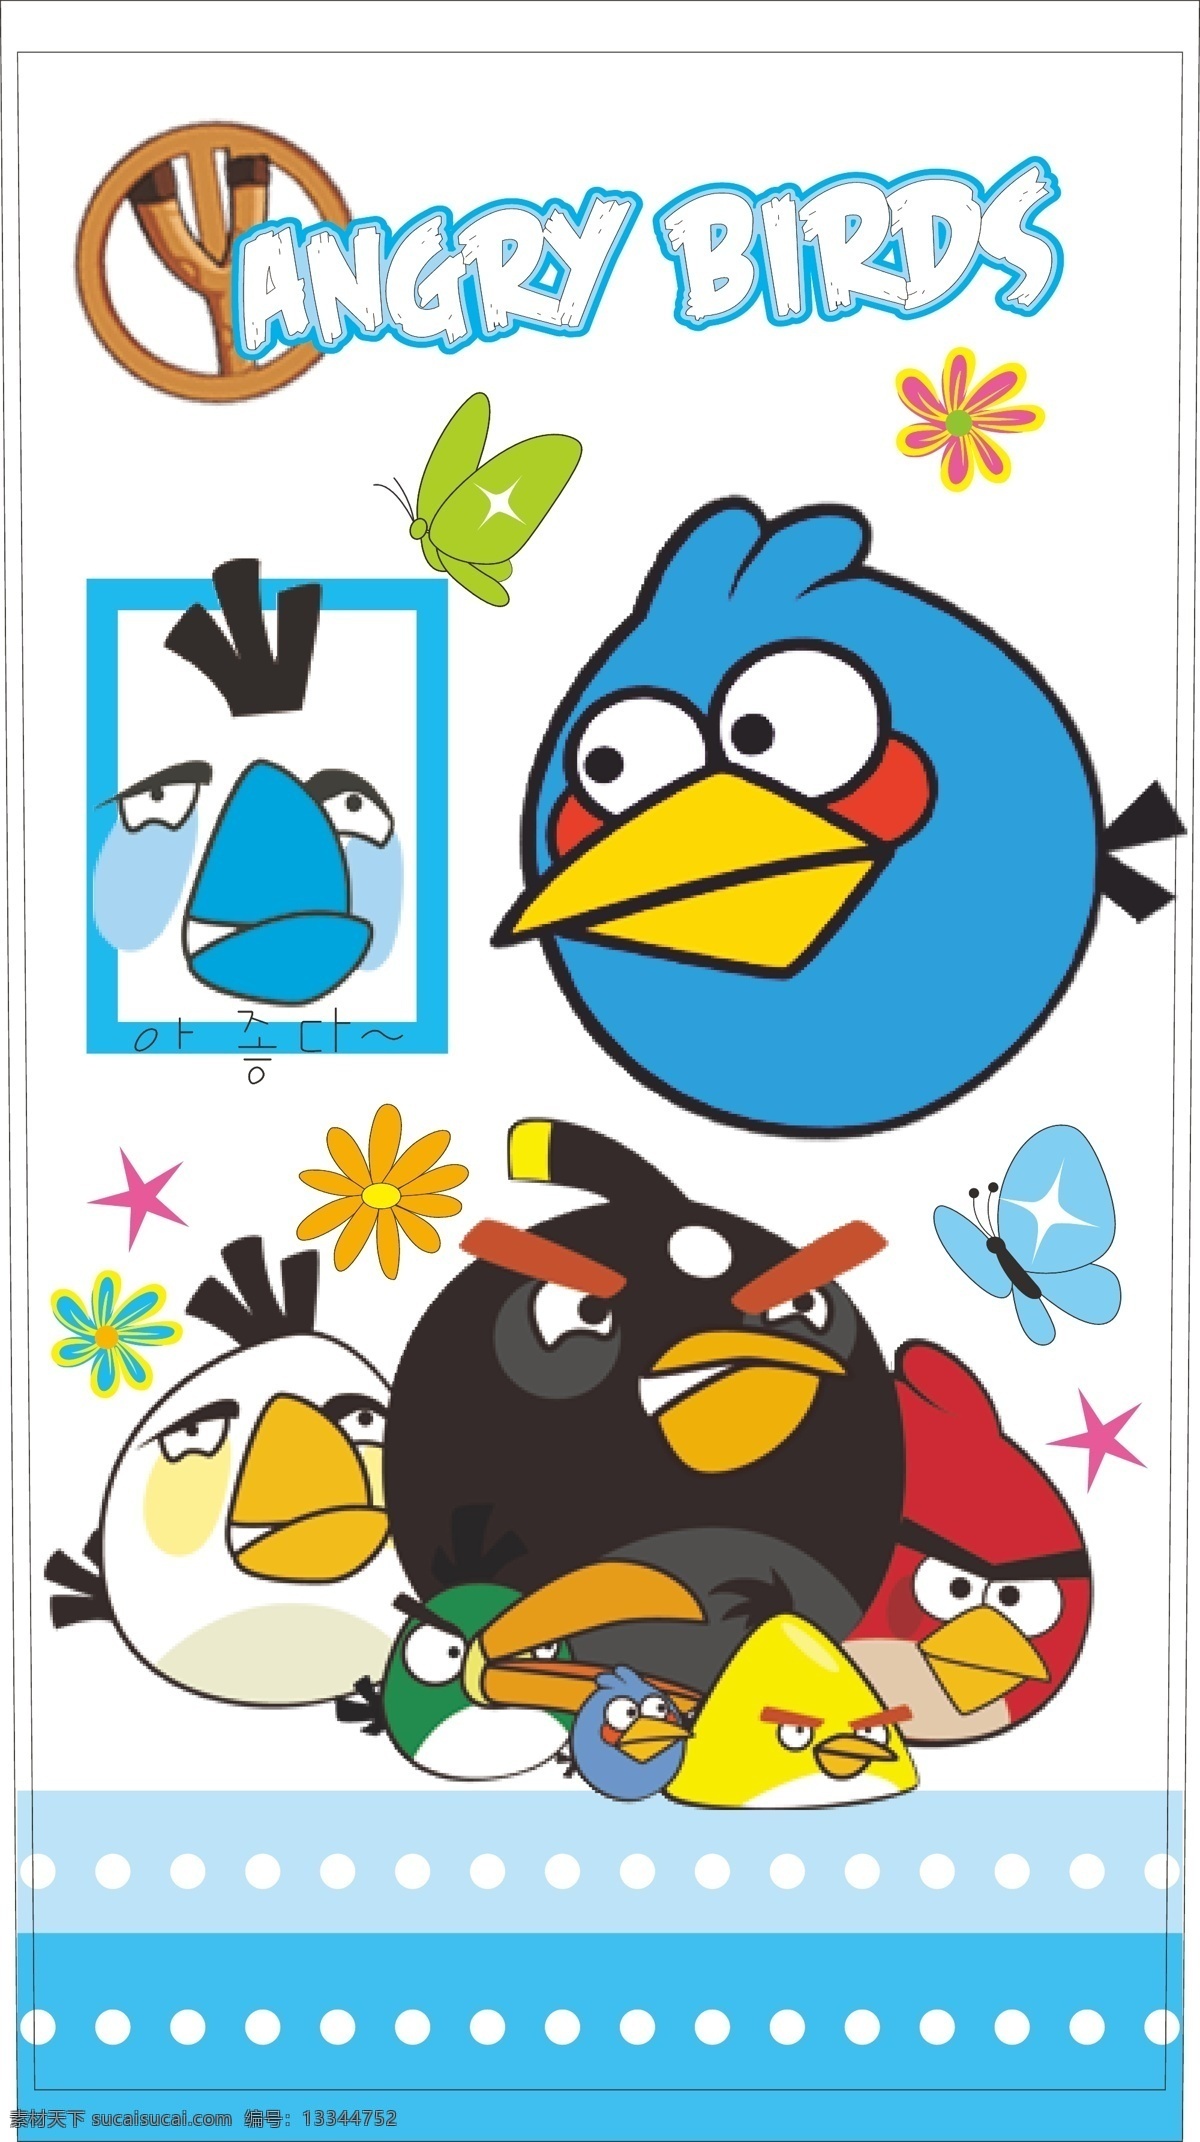 愤怒的小鸟 小鸟 鸟 卡通画 卡通 卡通鸟 本本封面 服装印花 儿童印花 儿童图集 卡通设计 矢量